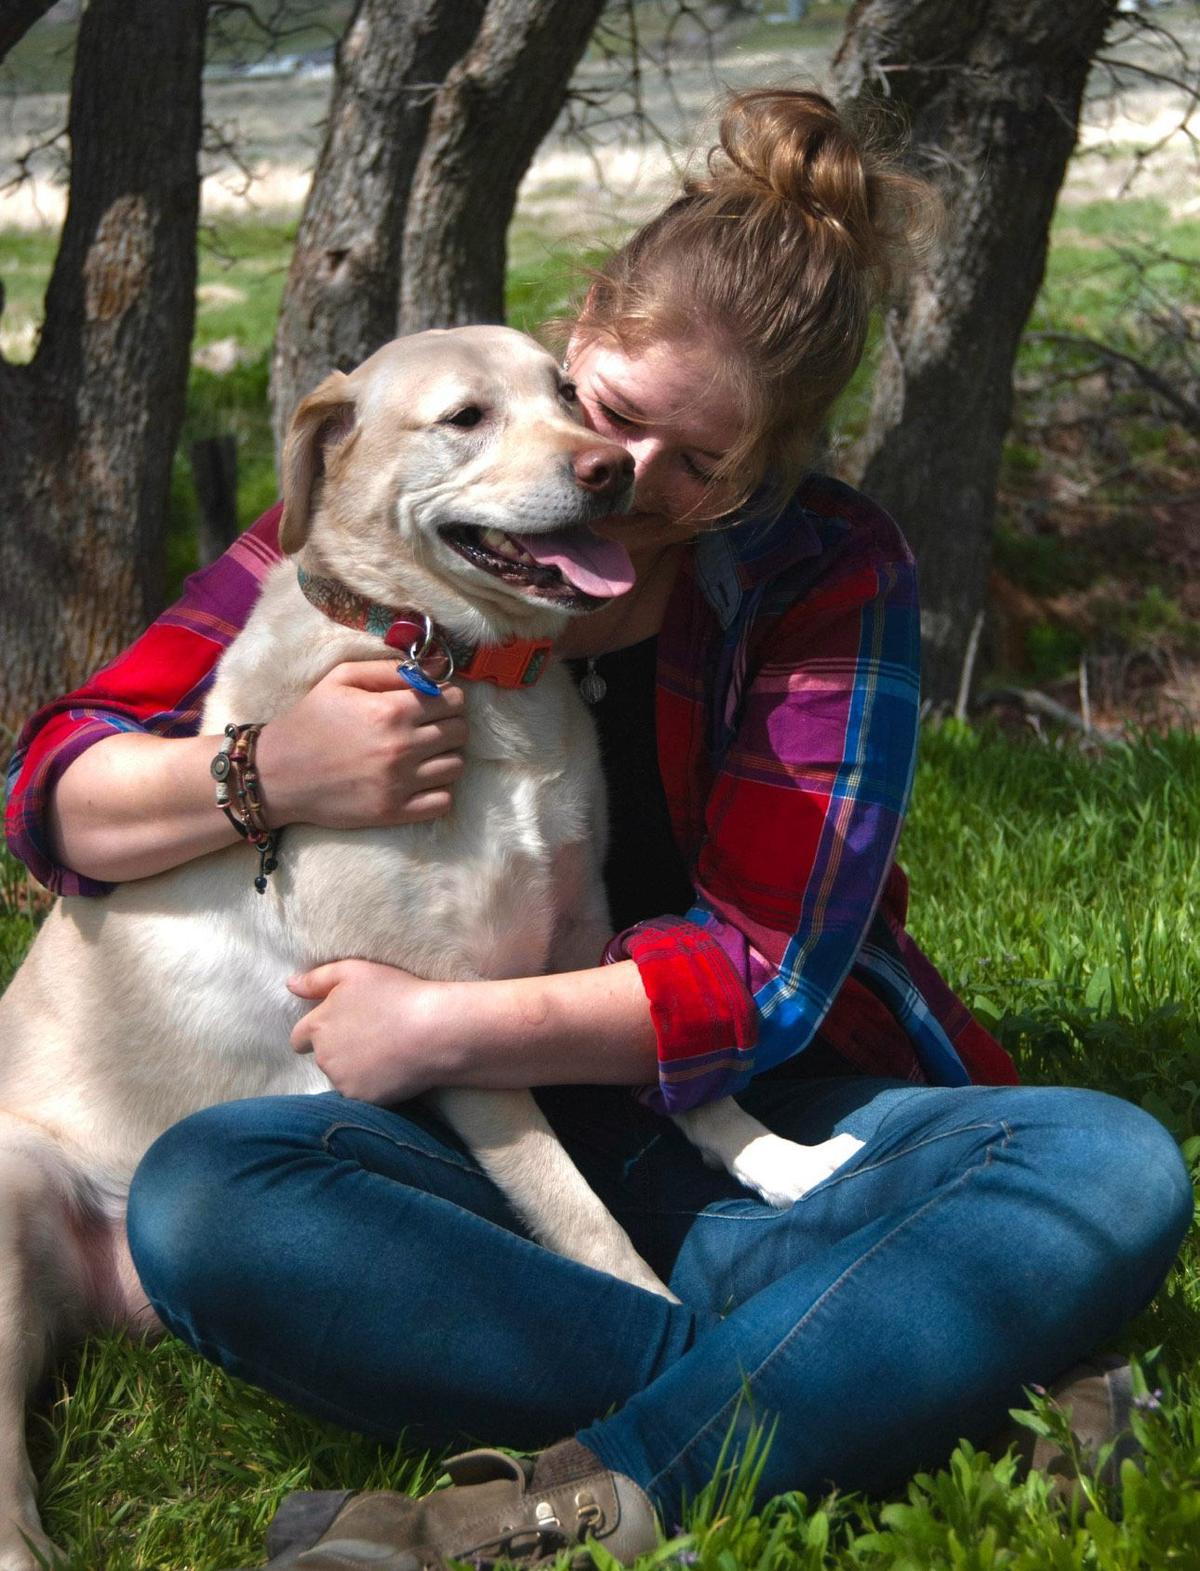 Courtney Earnhart with her dog, Dakota. (SWNS)